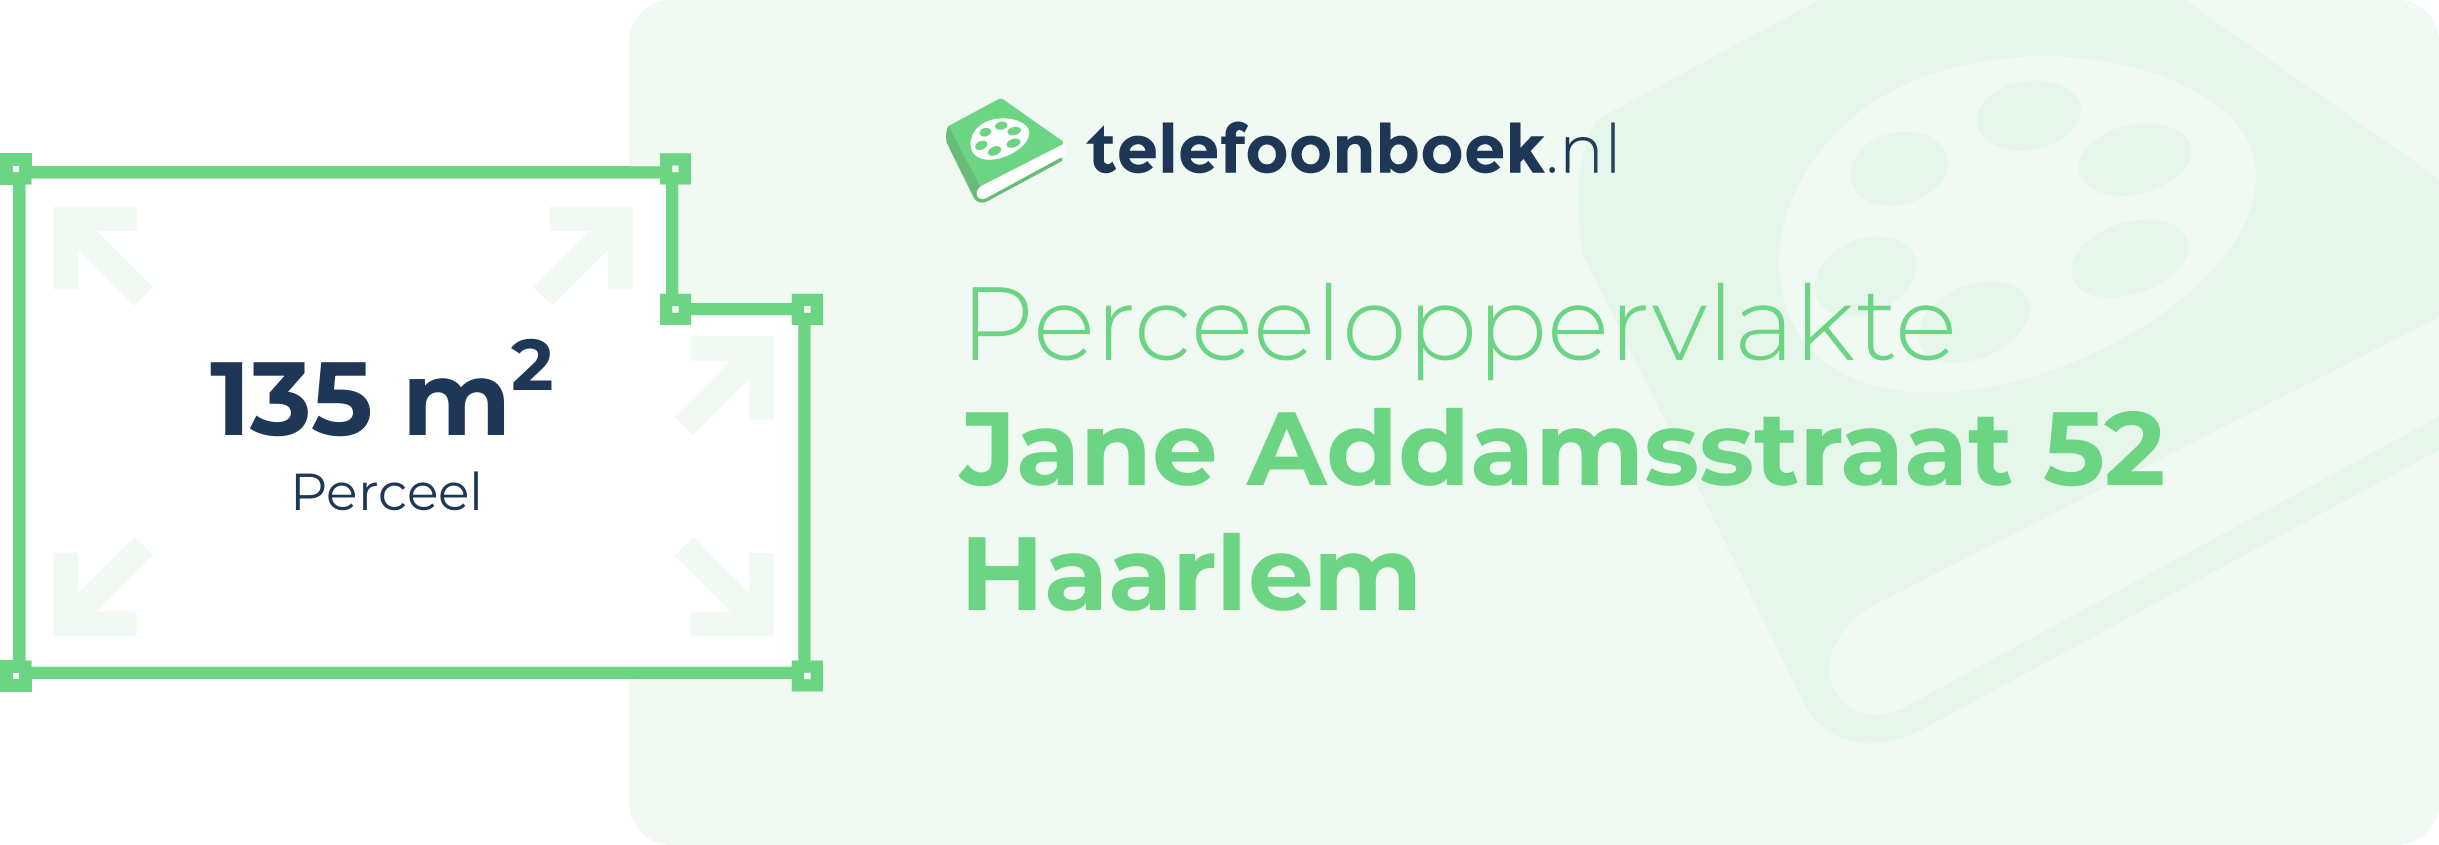 Perceeloppervlakte Jane Addamsstraat 52 Haarlem